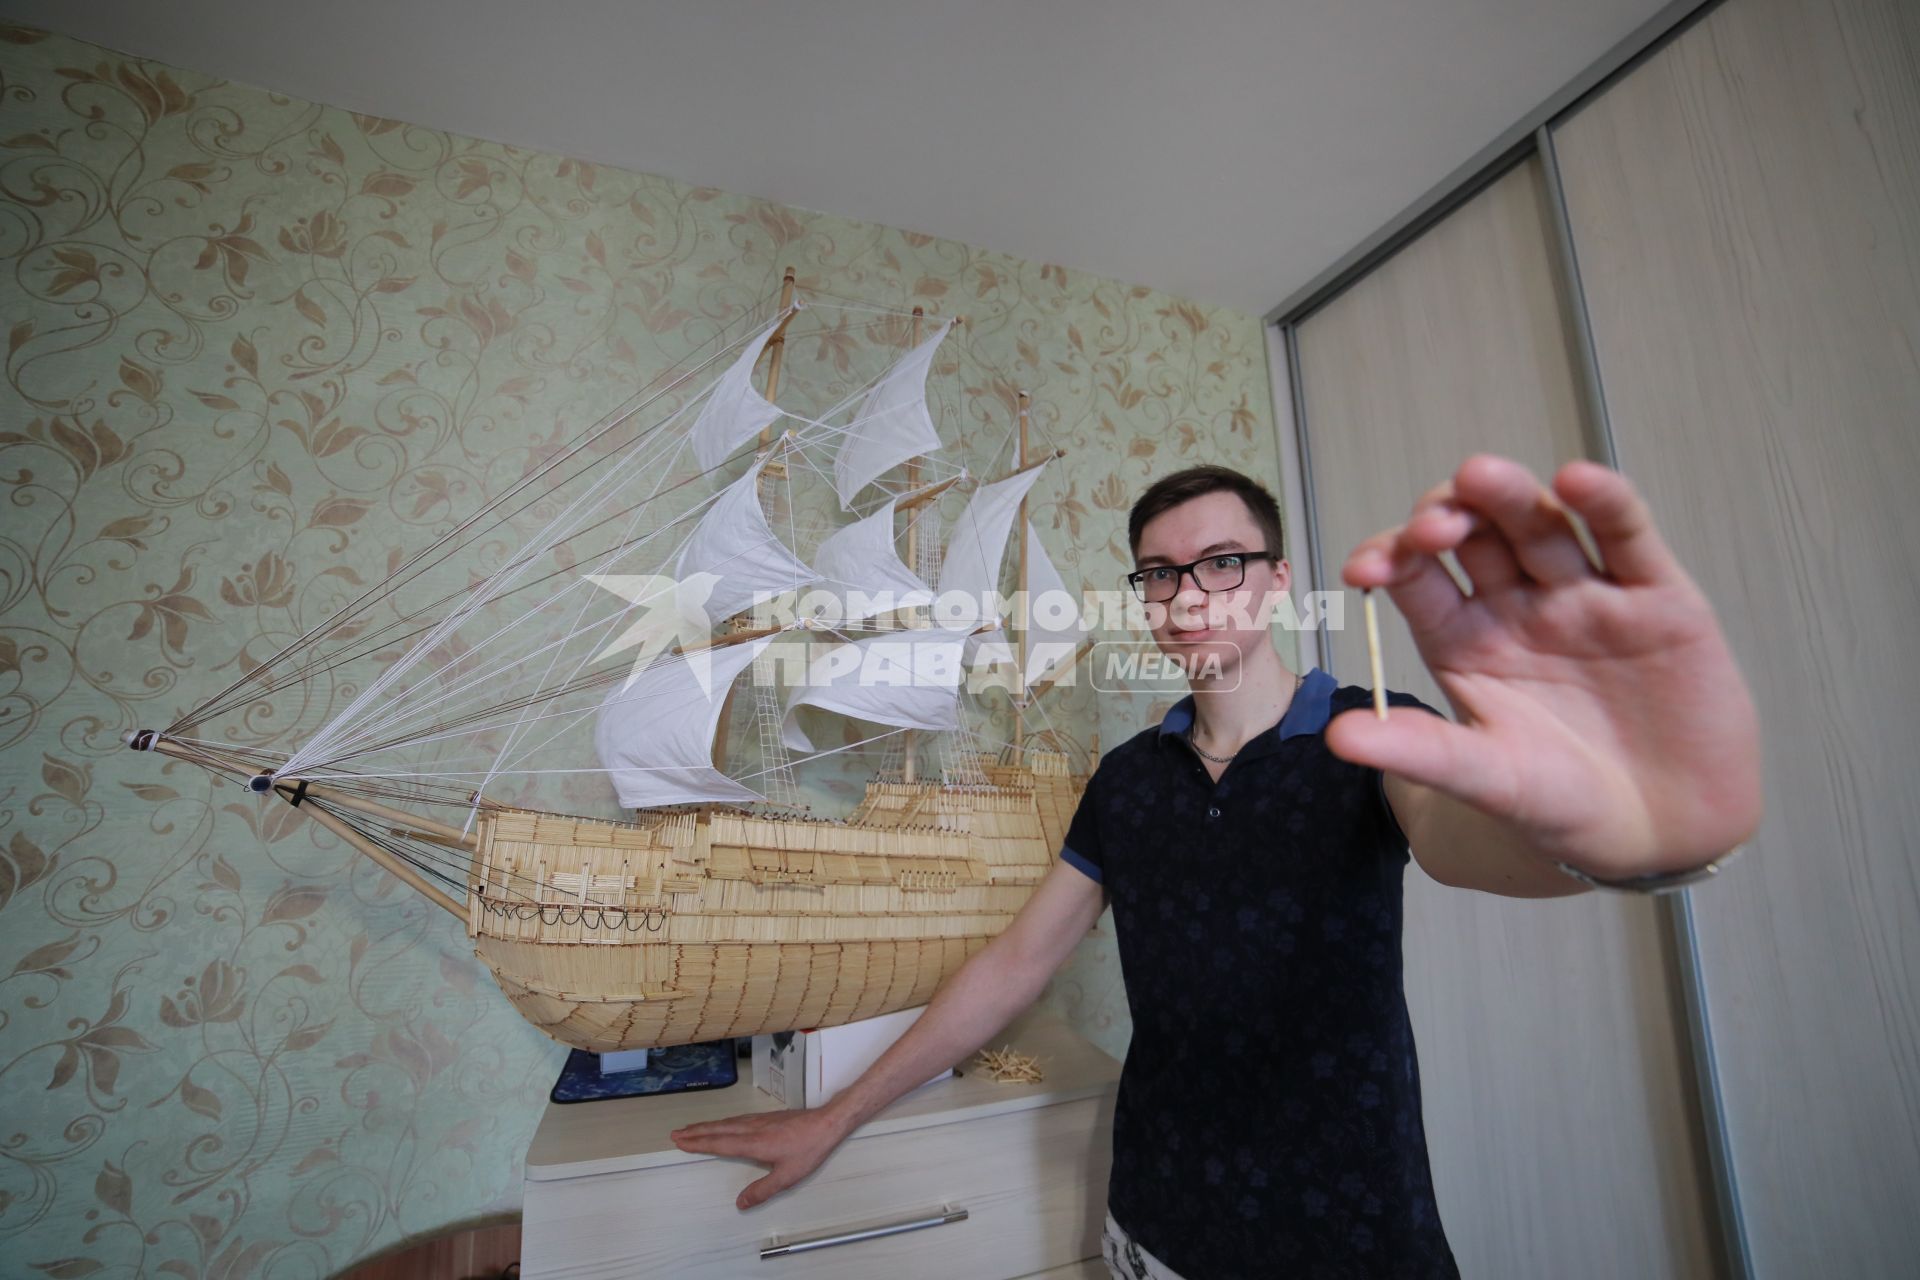 Красноярск. Роман Ермаков сделал модель корабля из 60 тысяч спичек.